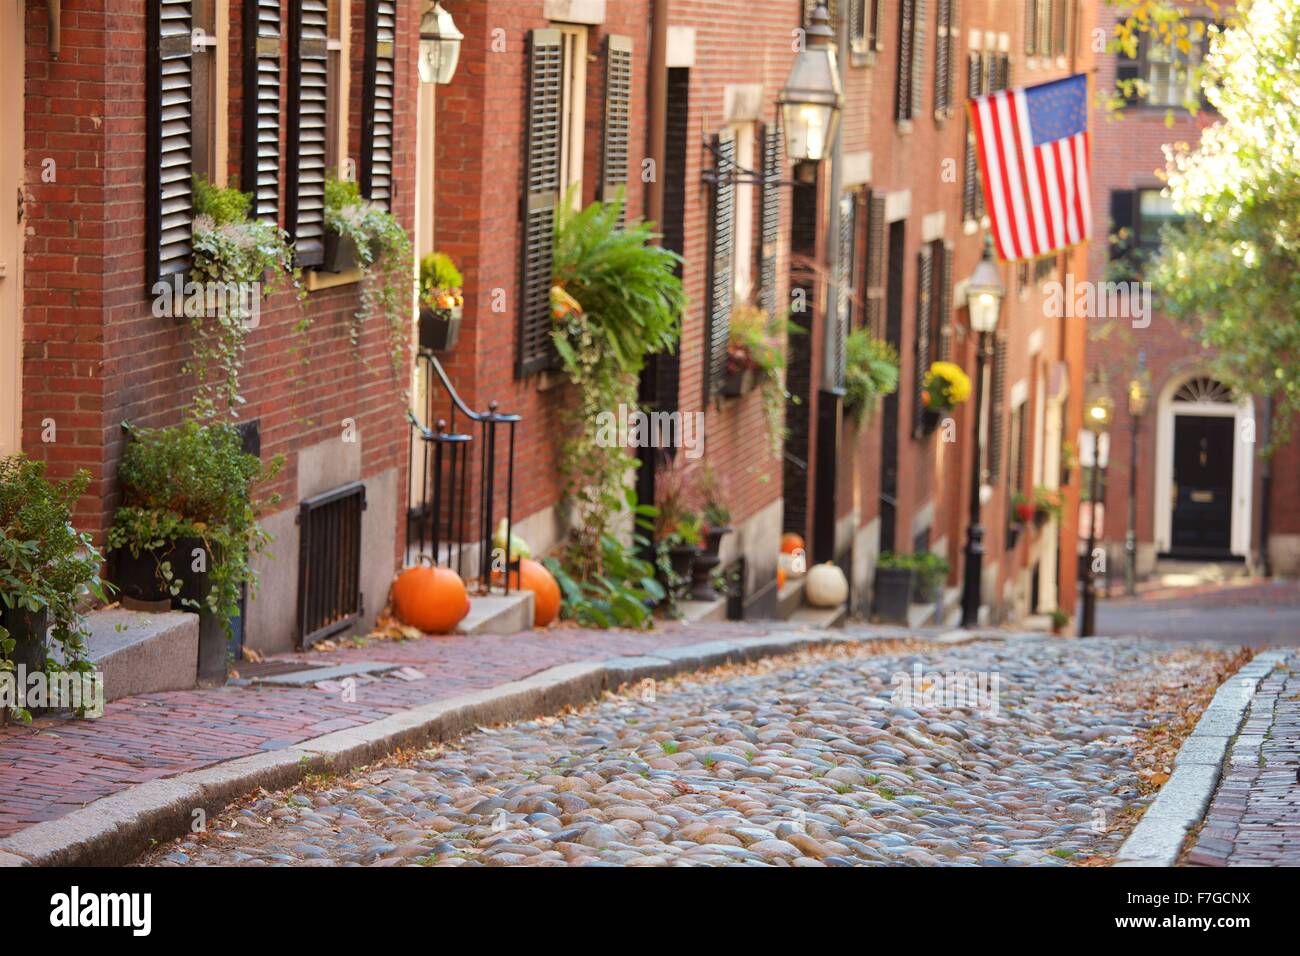 Autumn on Acorn Street in Beacon Hill, Boston, Massachusetts Stock Photo